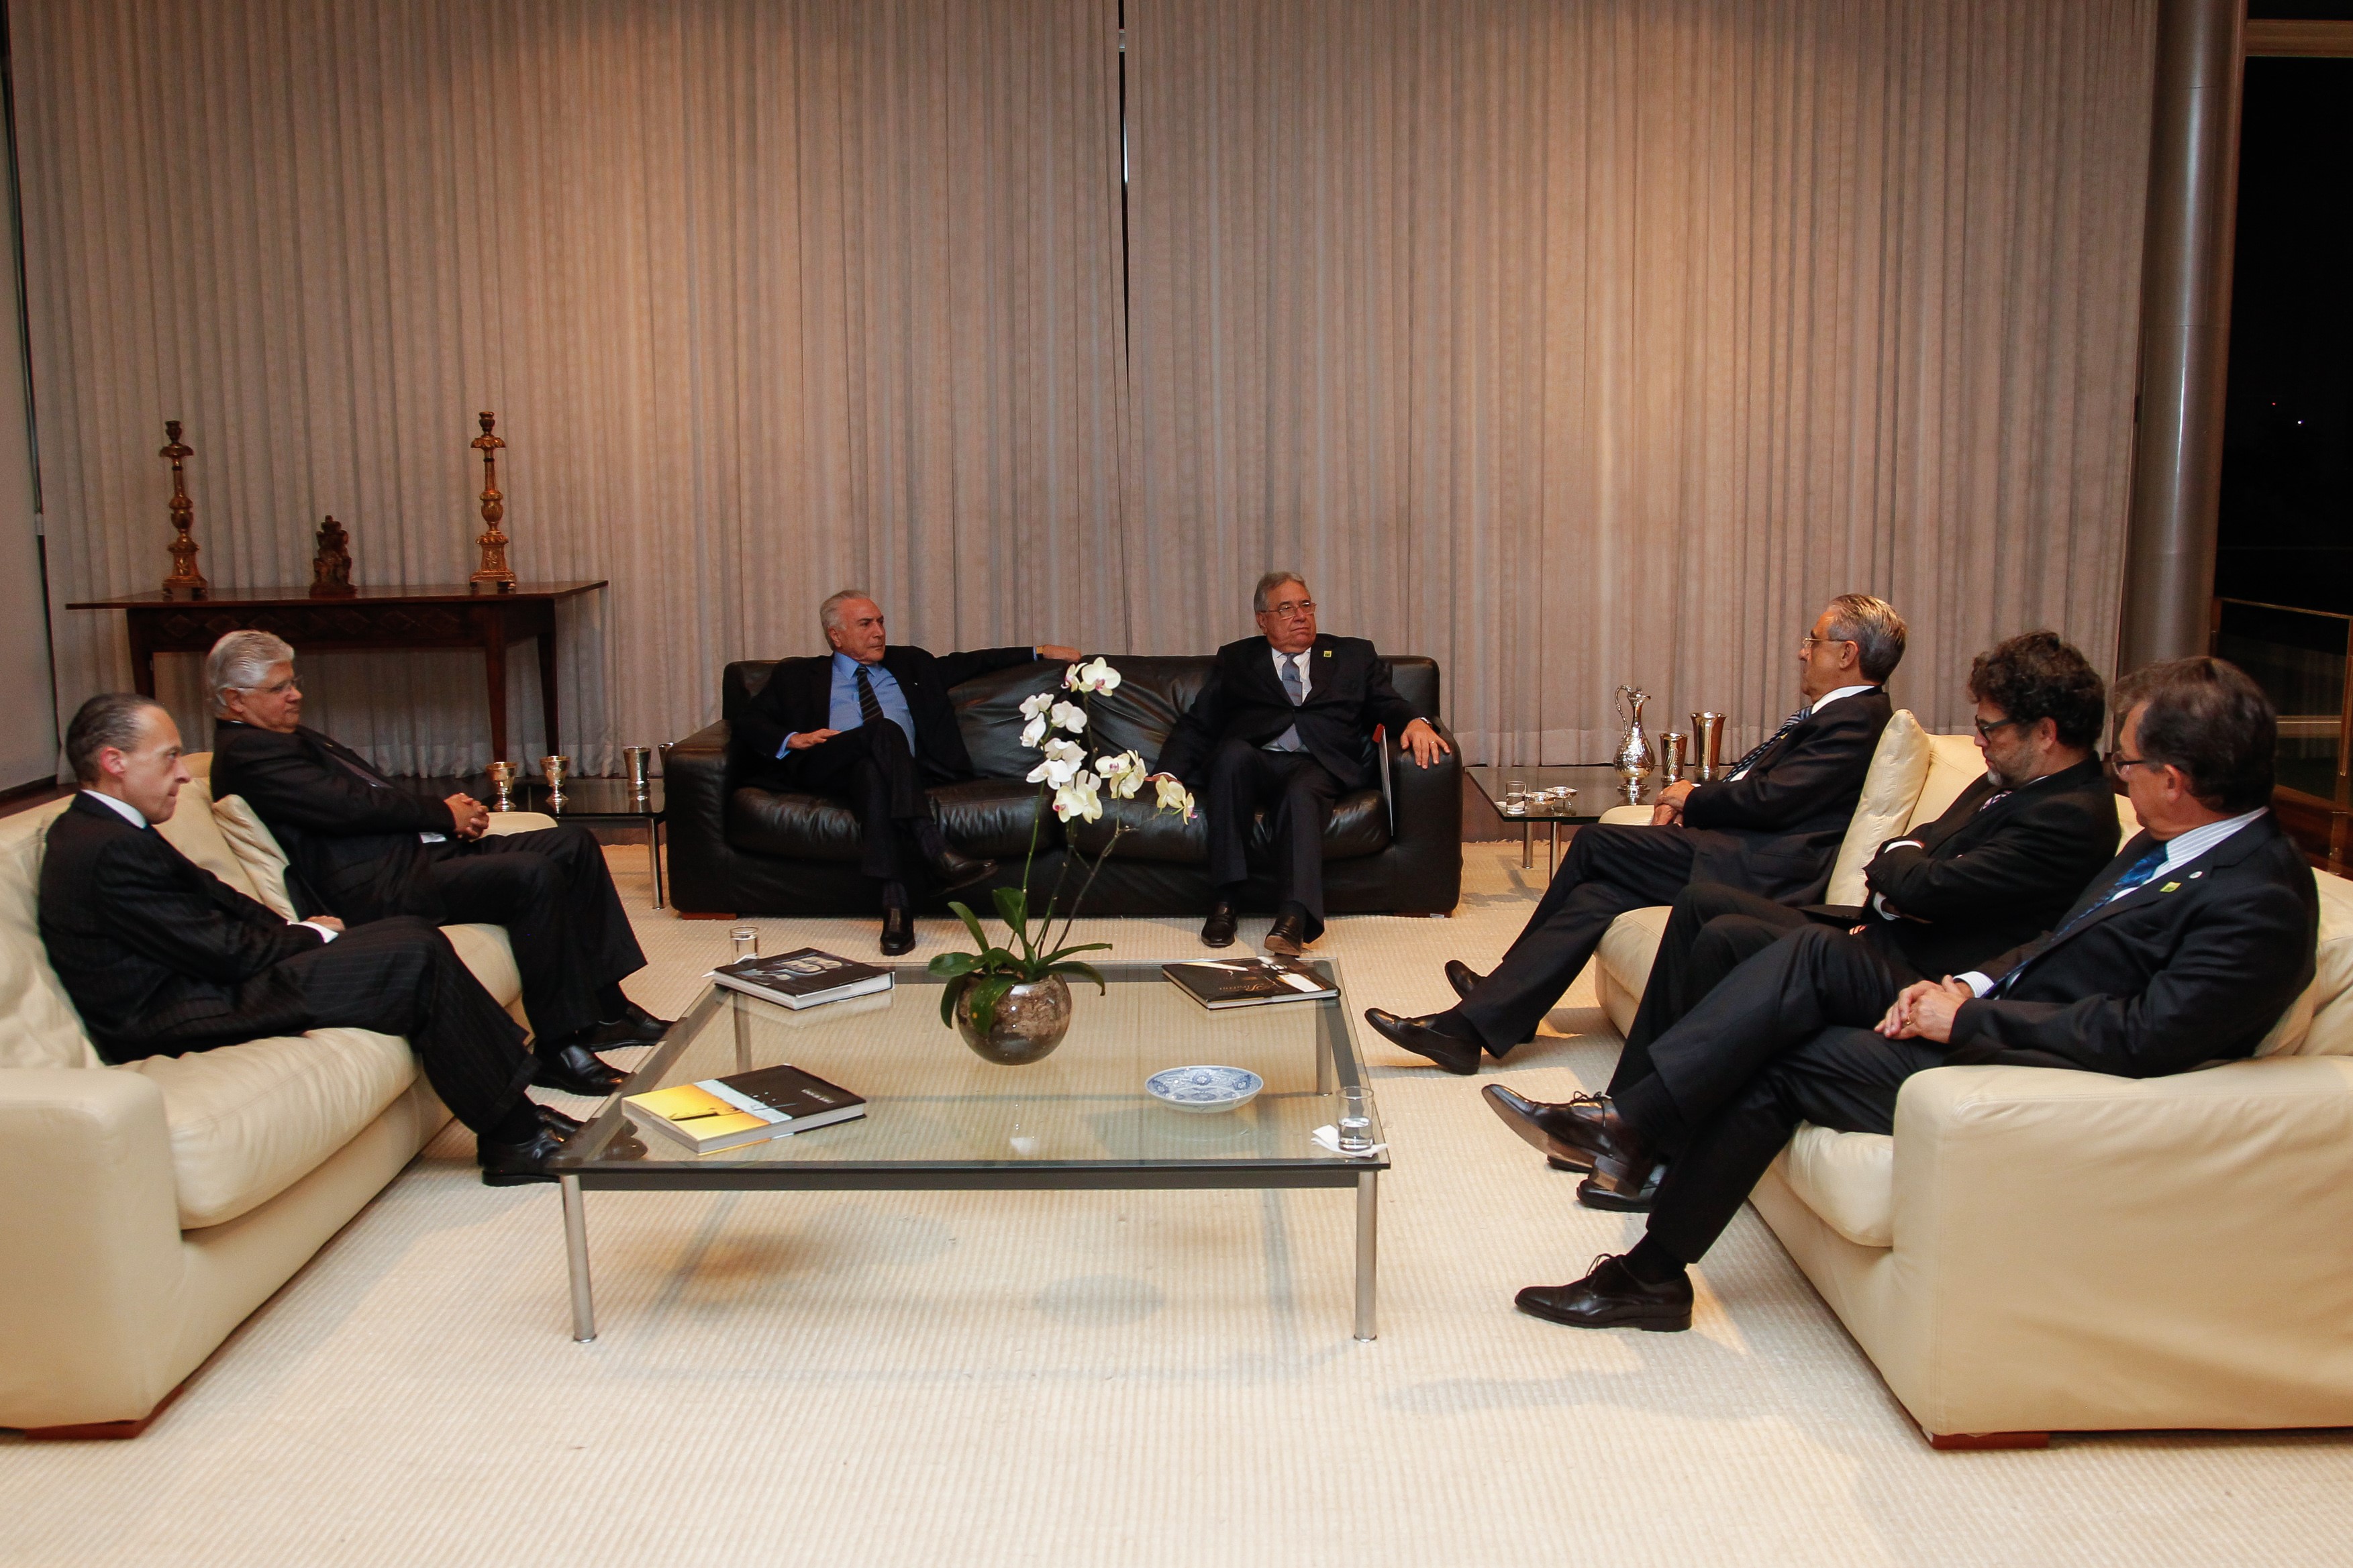 (Brasília - DF, 20/03/2018) Encontro com presidentes de Confederações no Palácio da Alvorada.
Foto: Beto Barata/PR